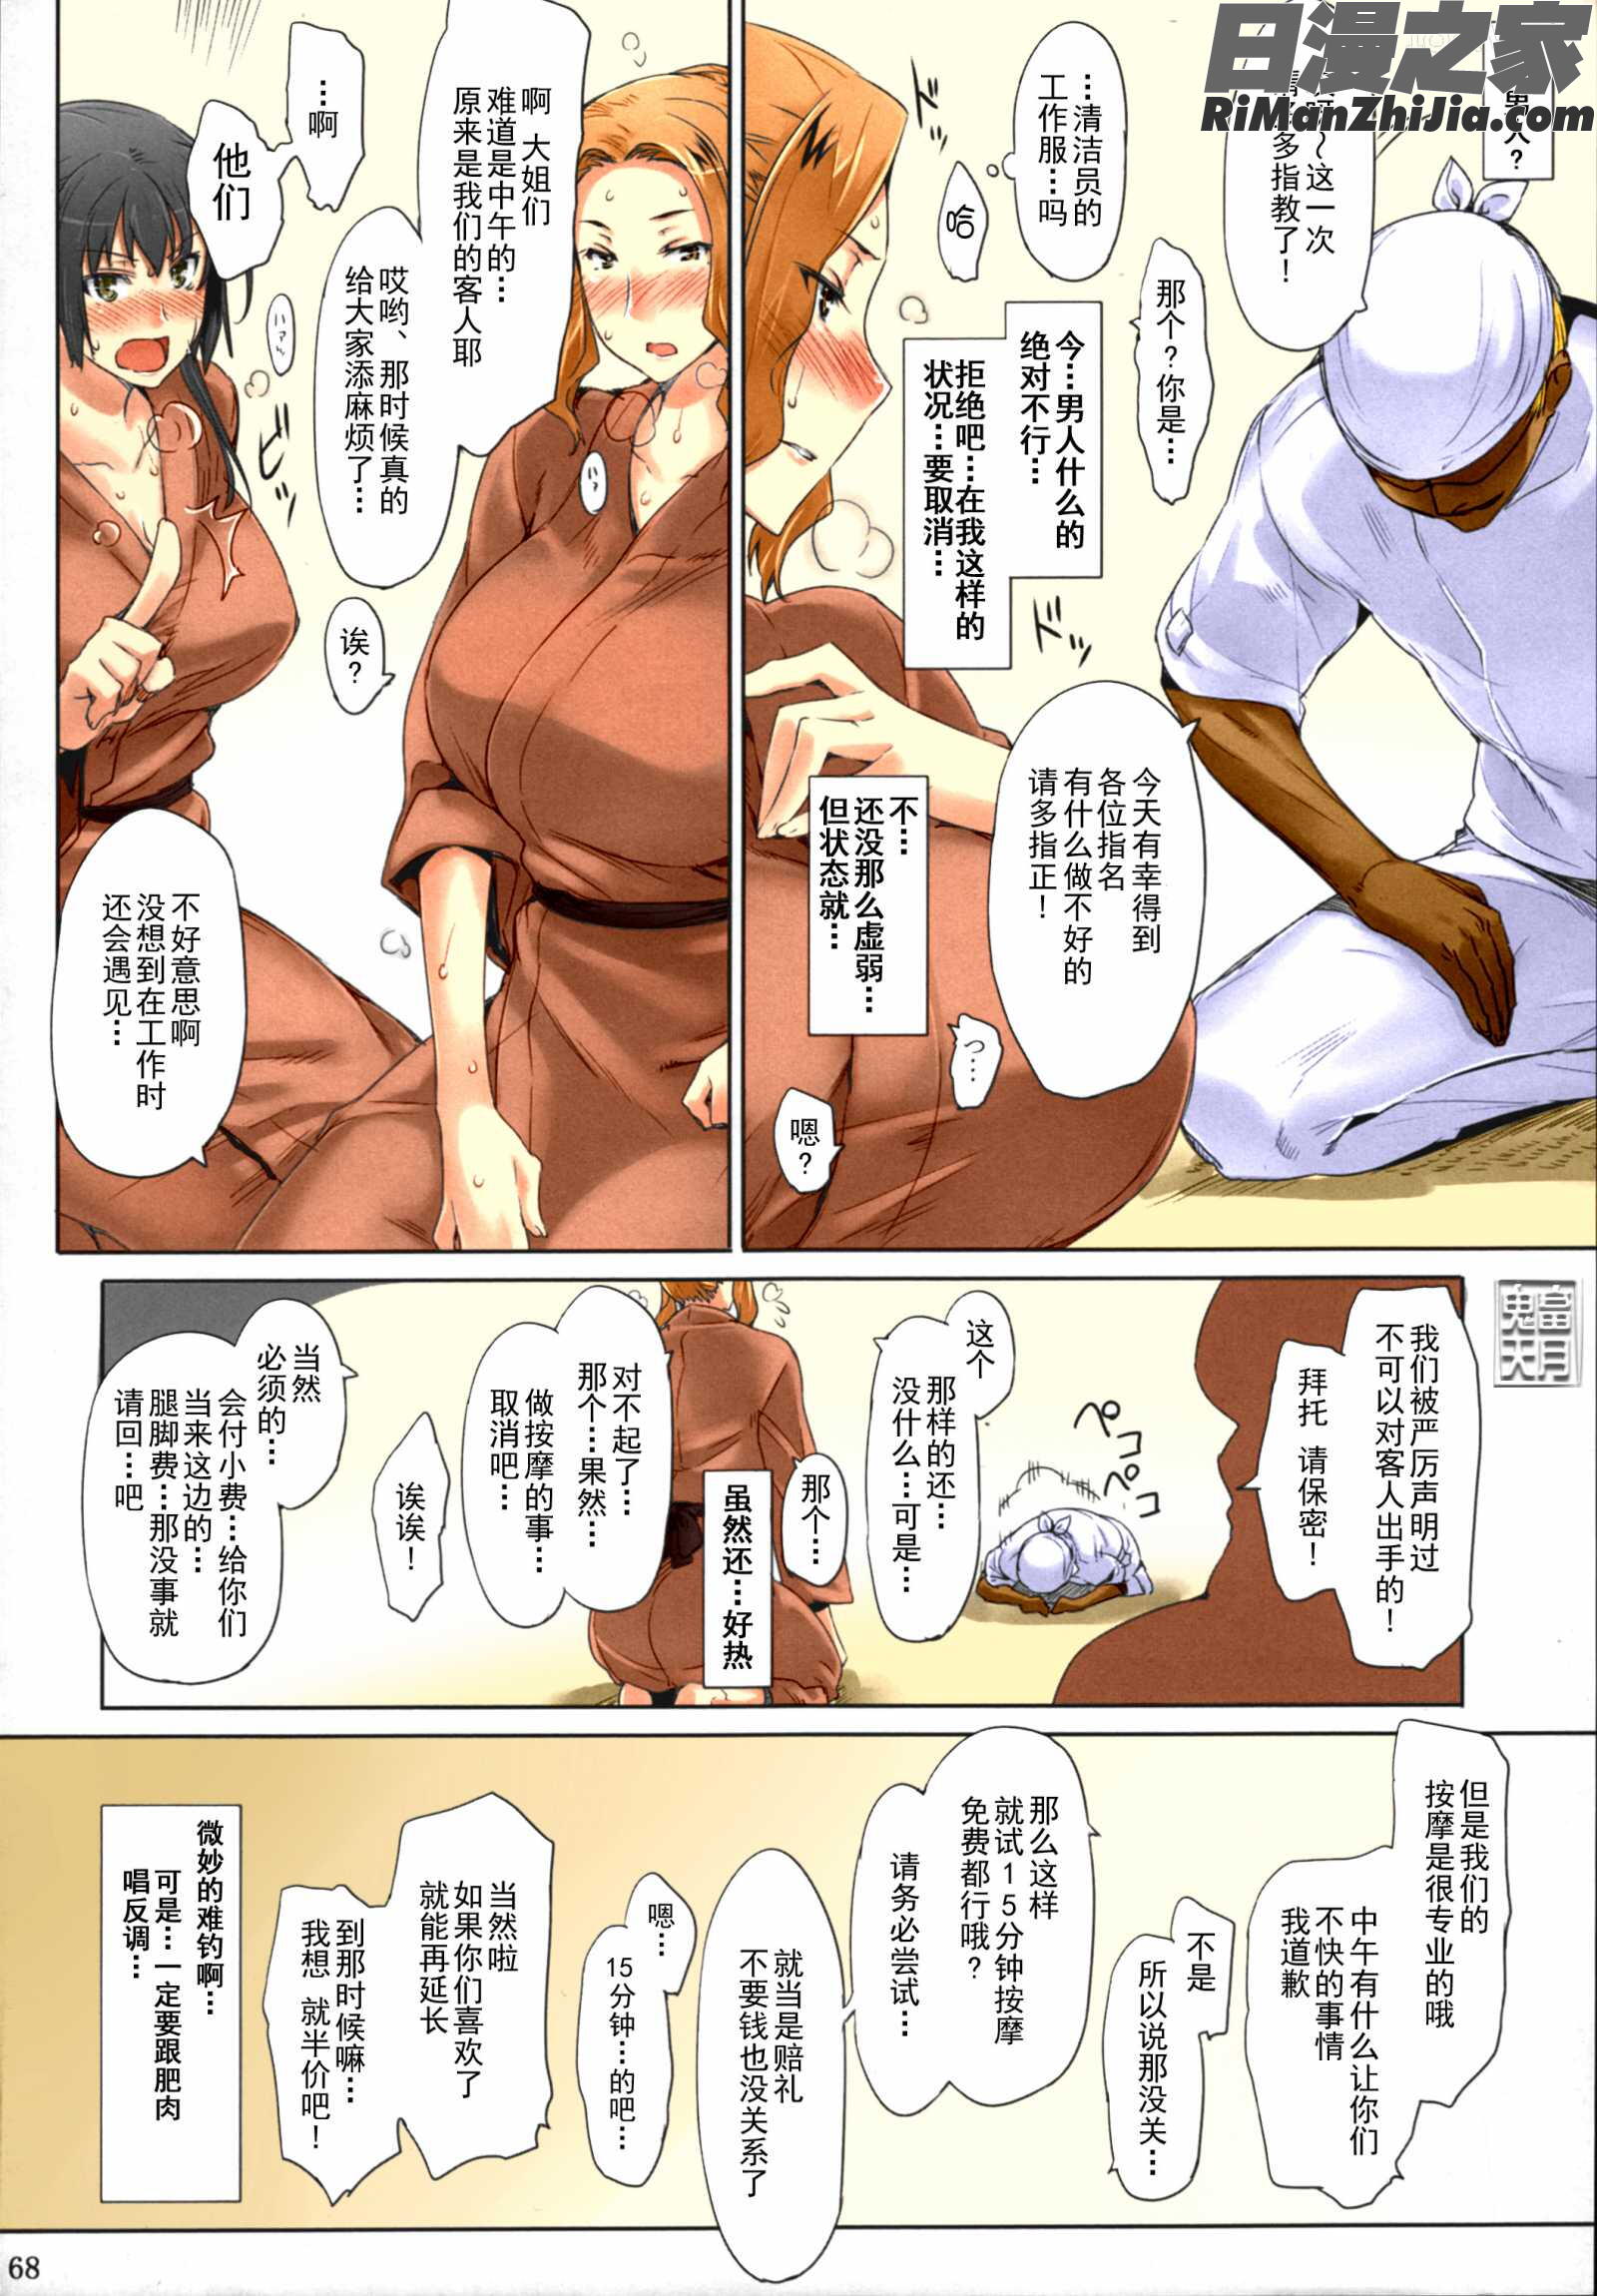 橘さん家ノ男性事情まとめ版漫画 免费阅读 整部漫画 70.jpg